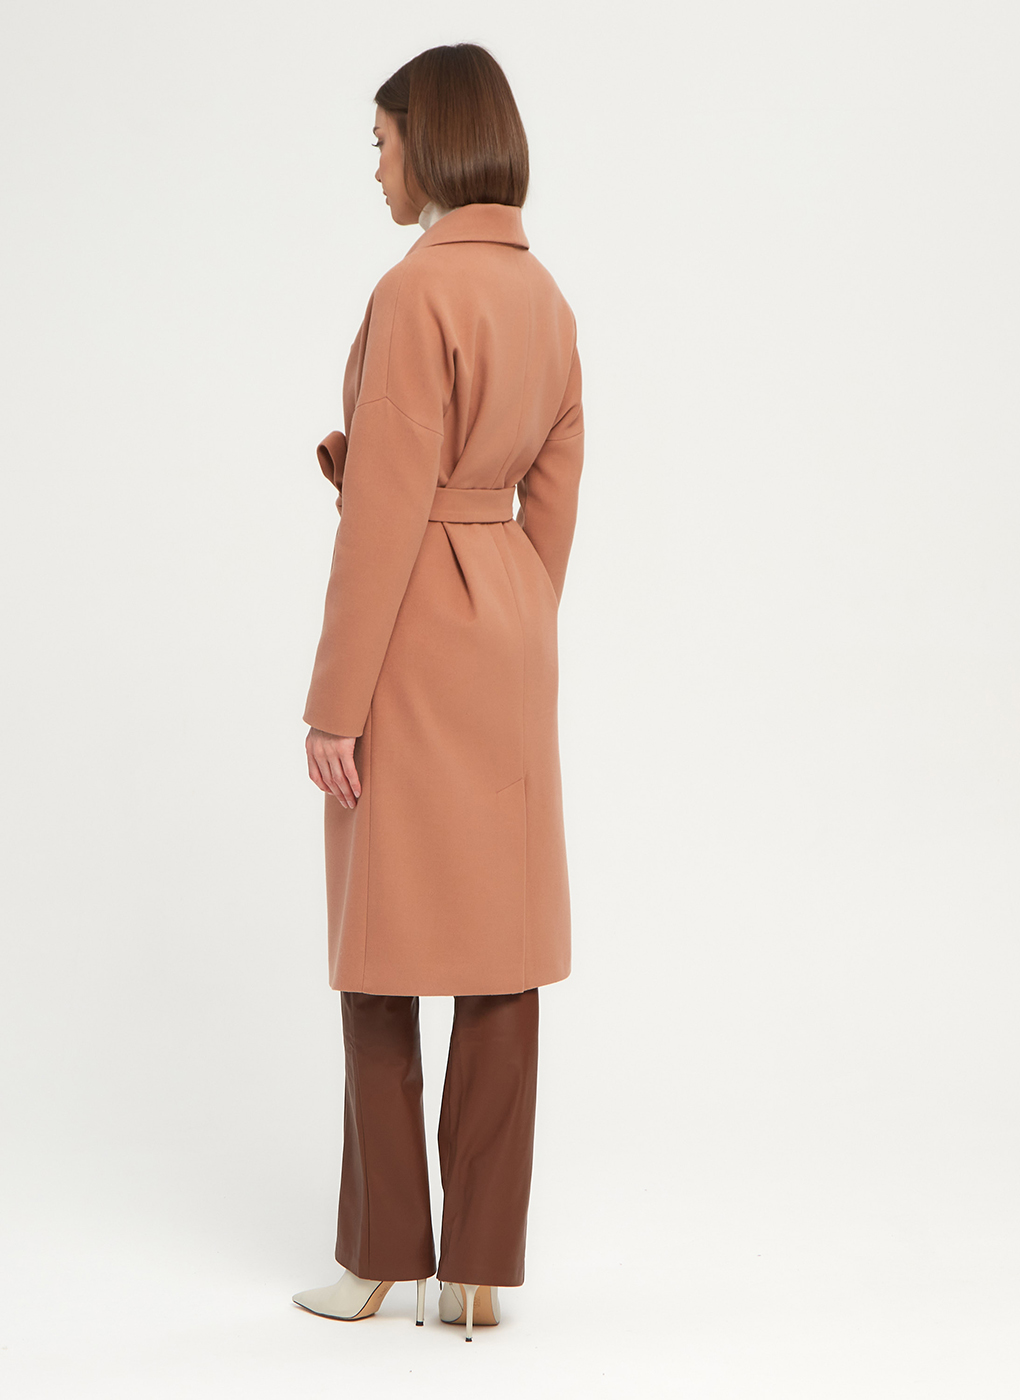 Пальто женское Giulia Rosetti 56204 розовое 46 RU